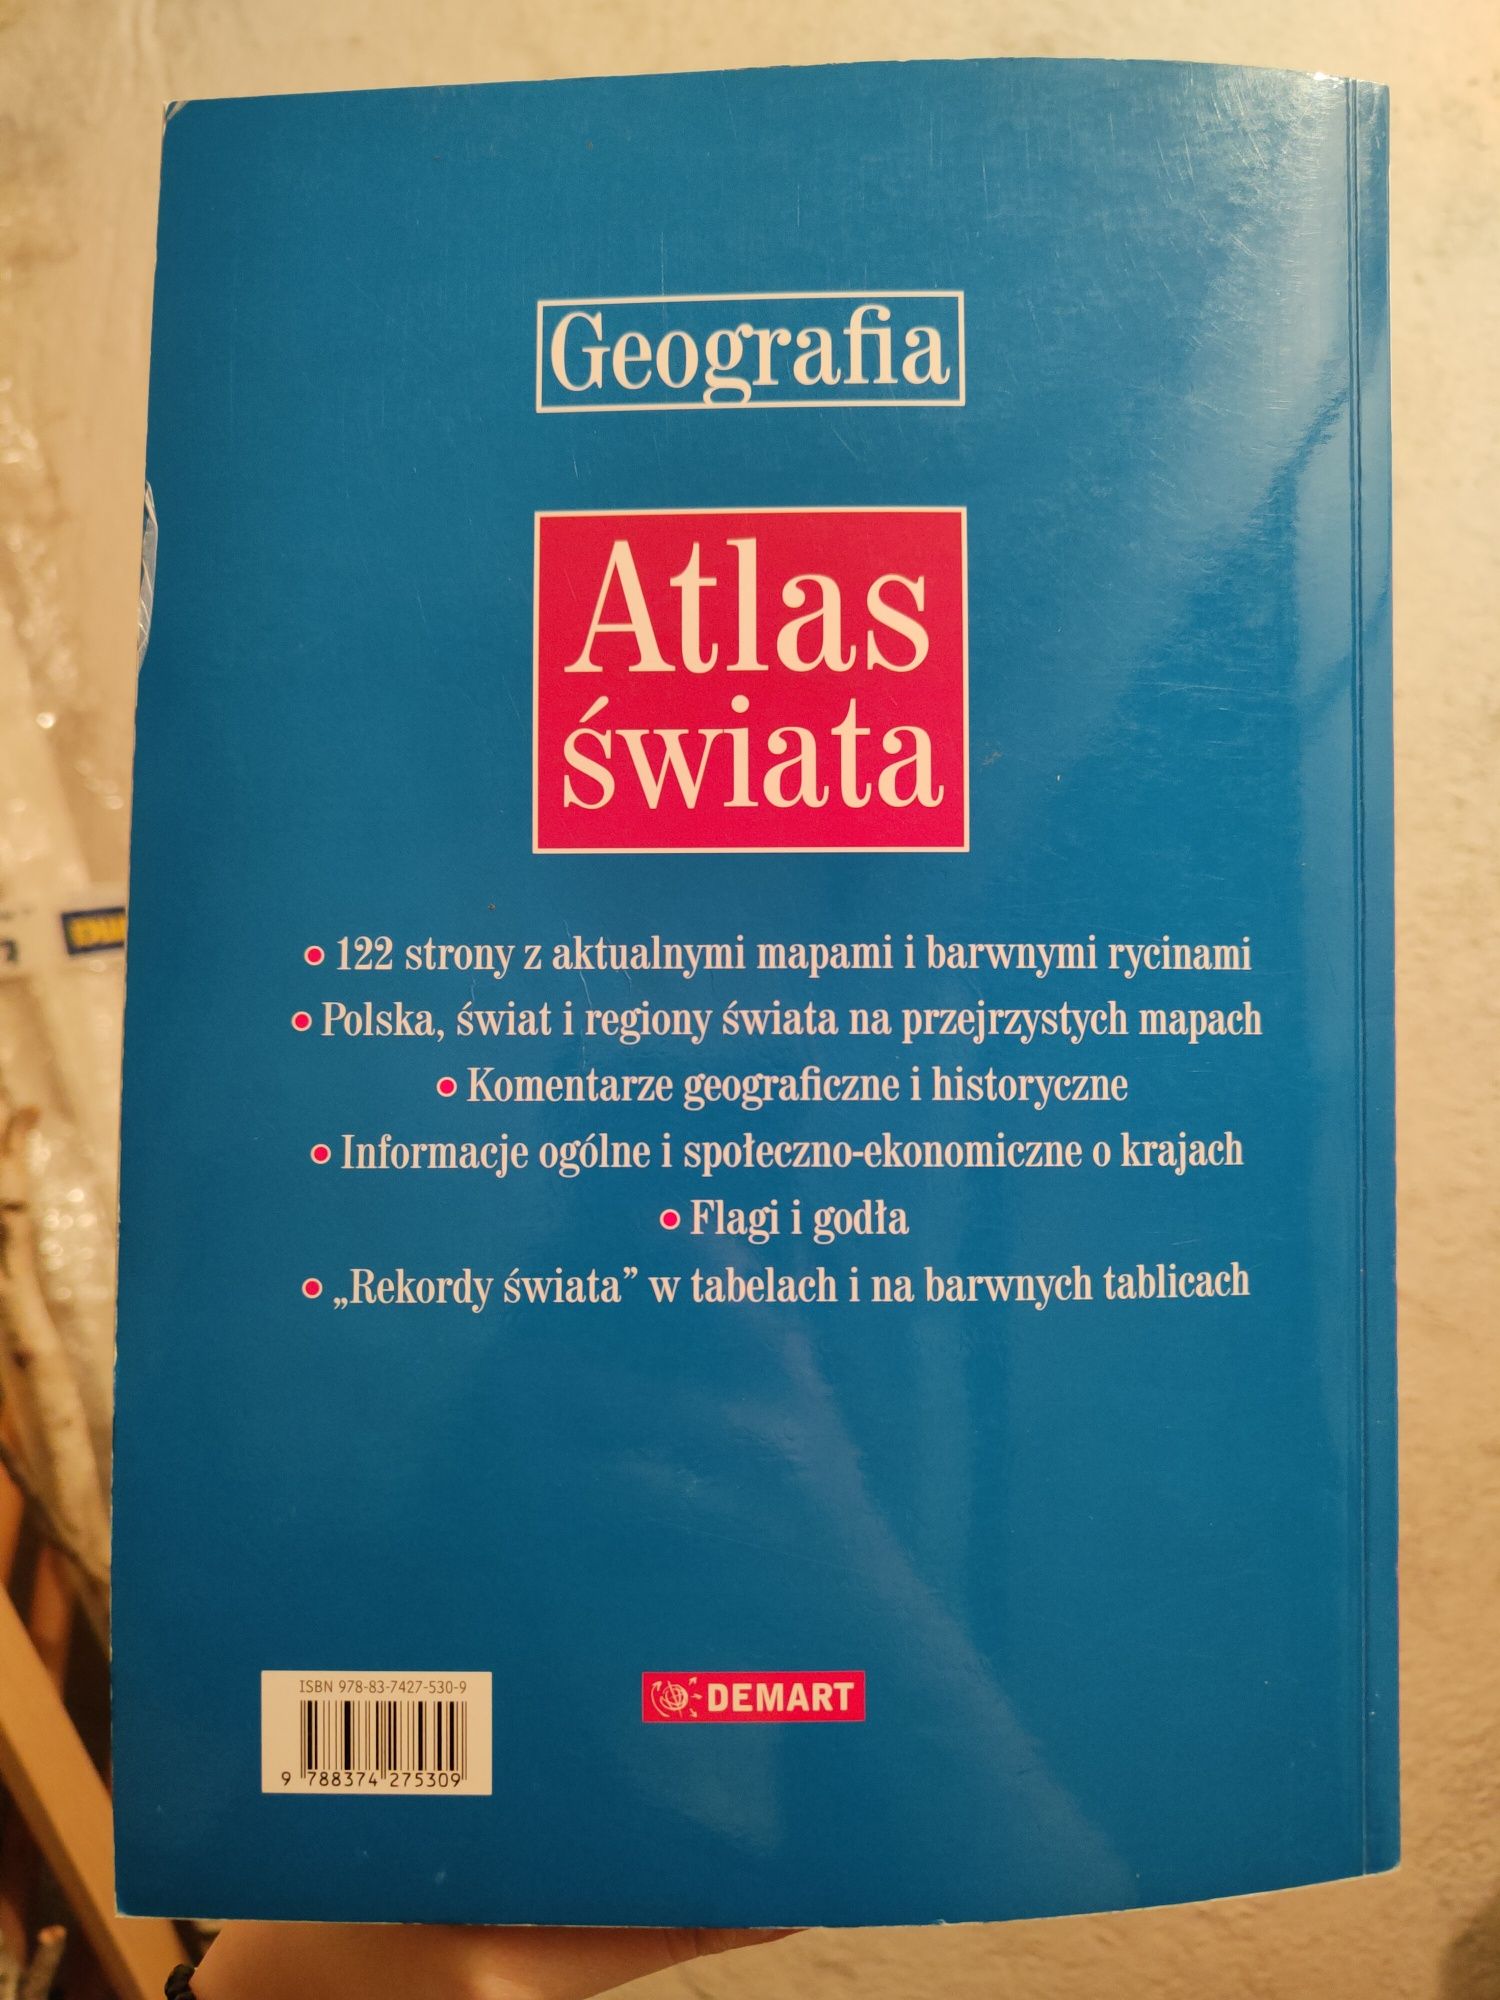 Atlas Świata - Geografia wyd. Demart